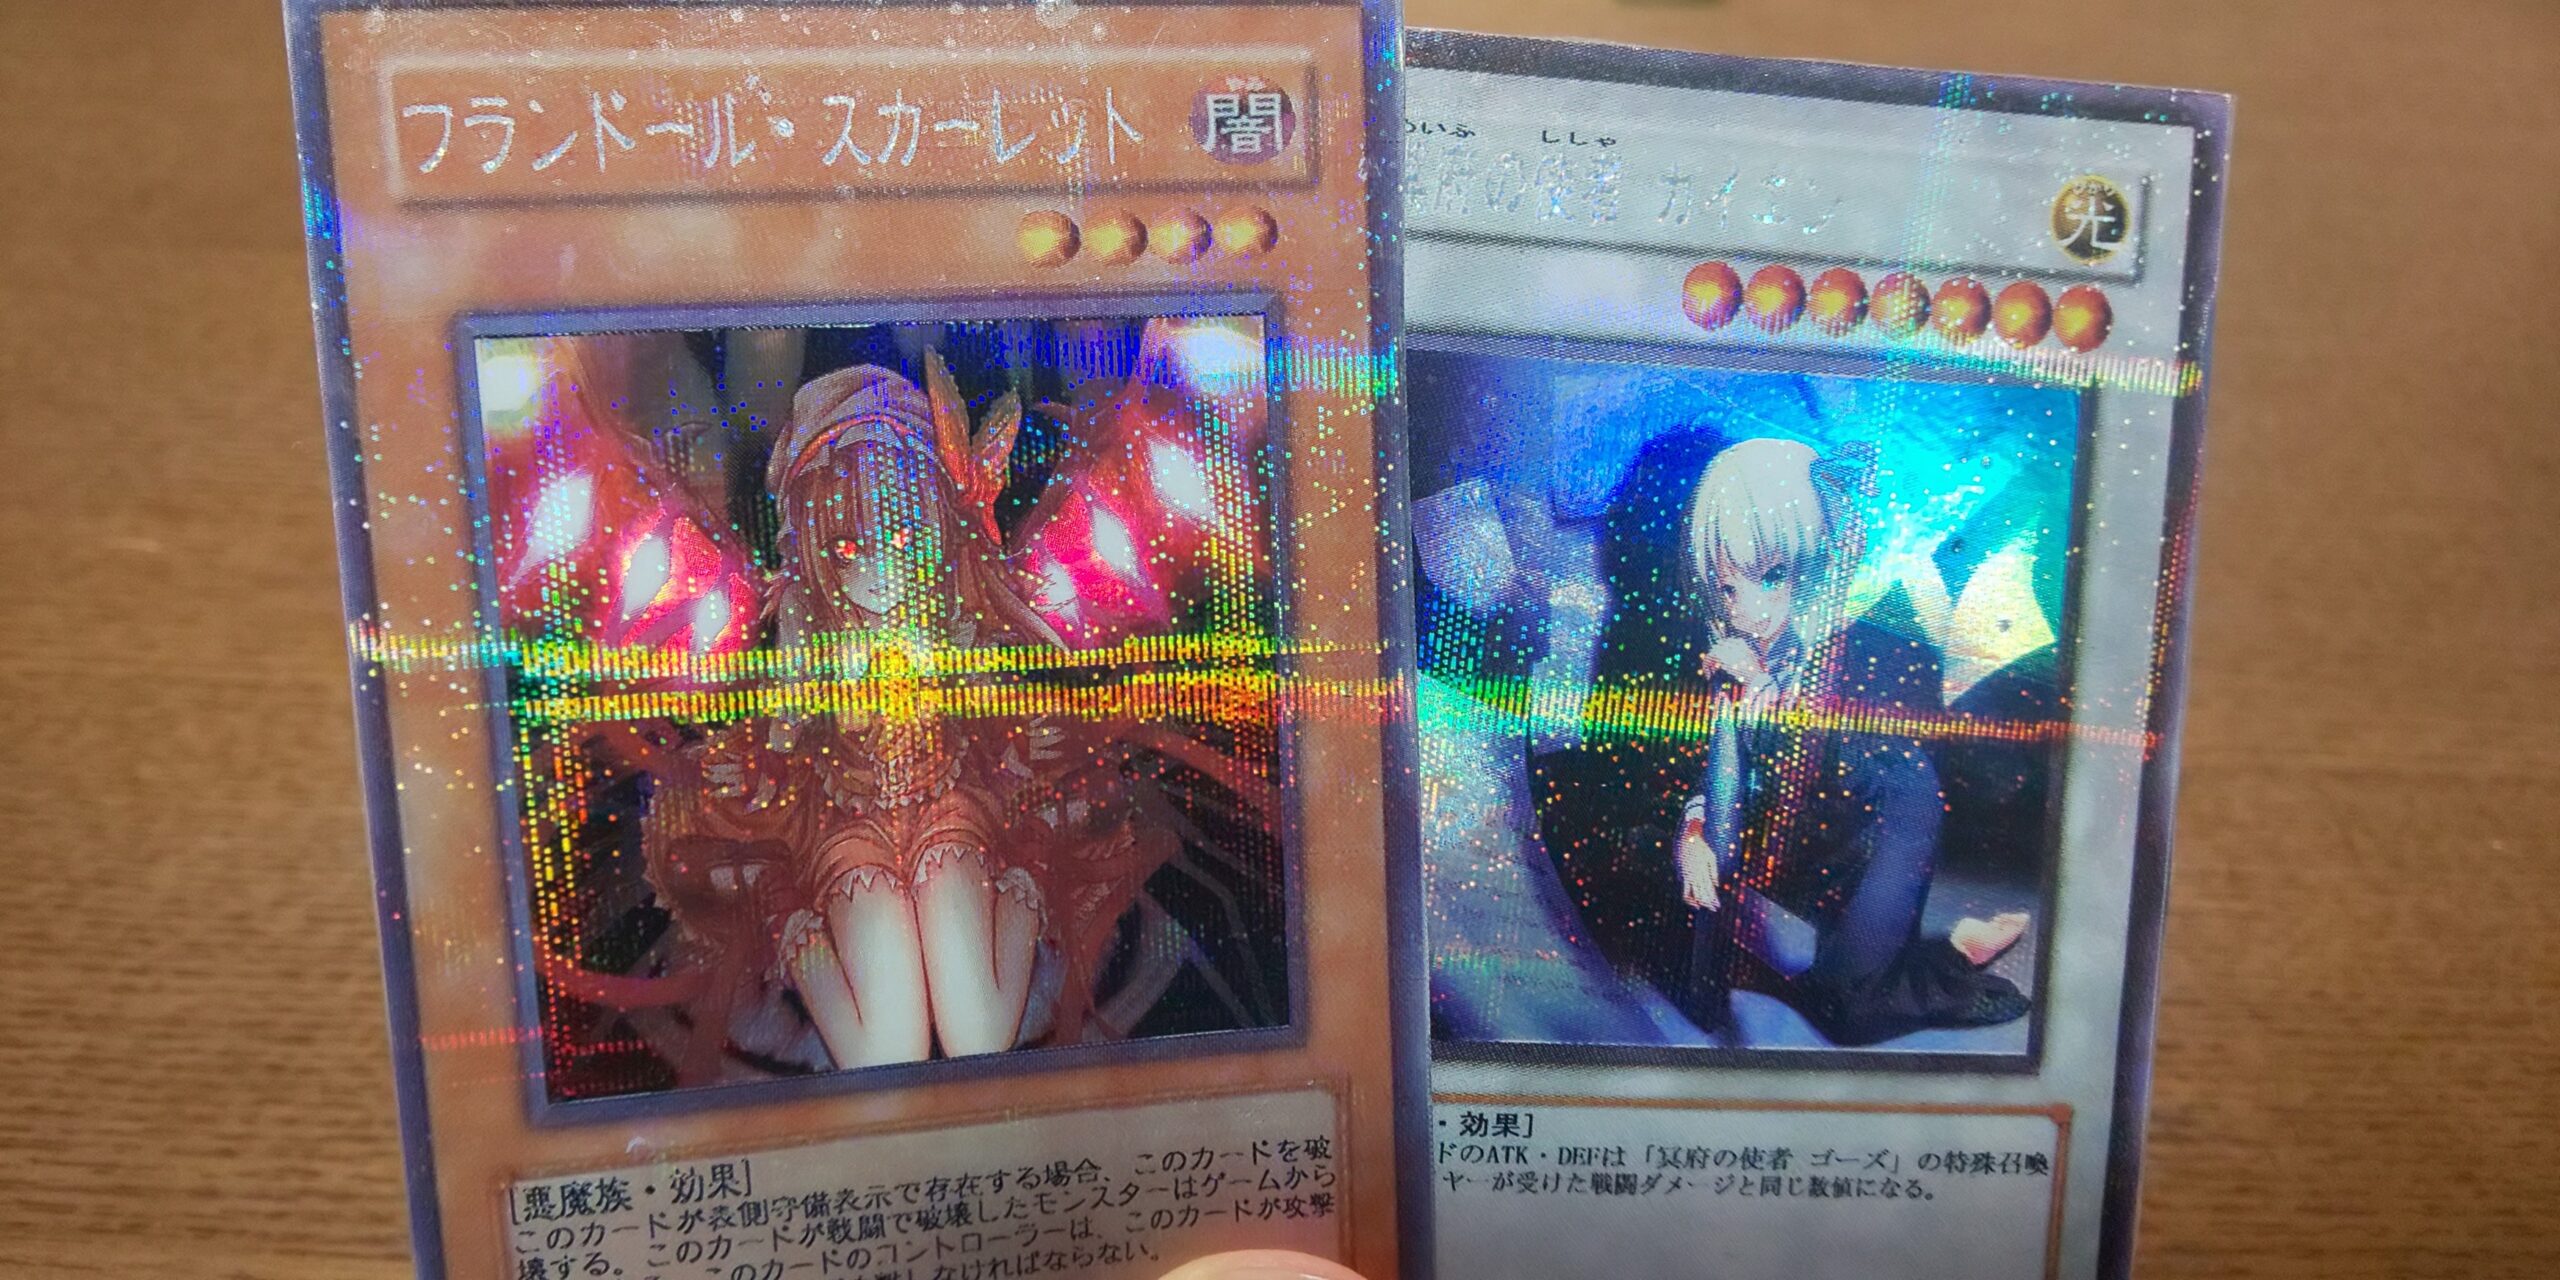 遊戯王 オリジナルカード オリカ のスーパー パラレルレア風作り方を紹介 マリブログ